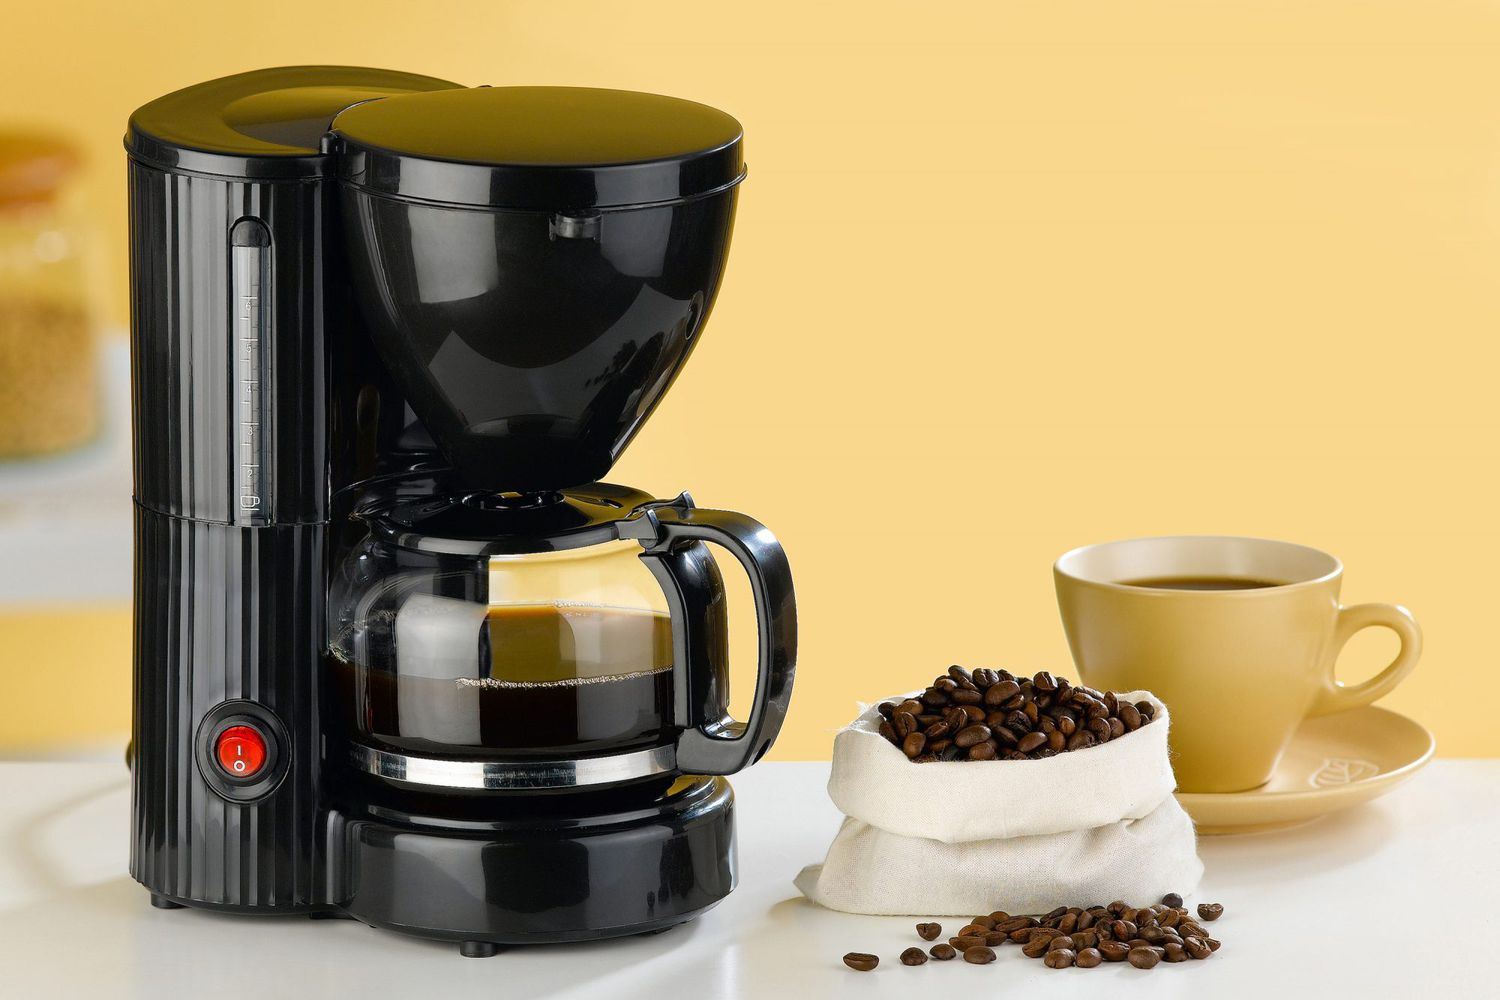 Кофе кофемашины кофеварки. Кофеварка Coffee maker. Кофеварка. Grind & Brew кофемашина hd7761/00 | Philips› hd7761-Grind-Brew-maker. Кофеварка Coffee Queen da-4. Капельный.